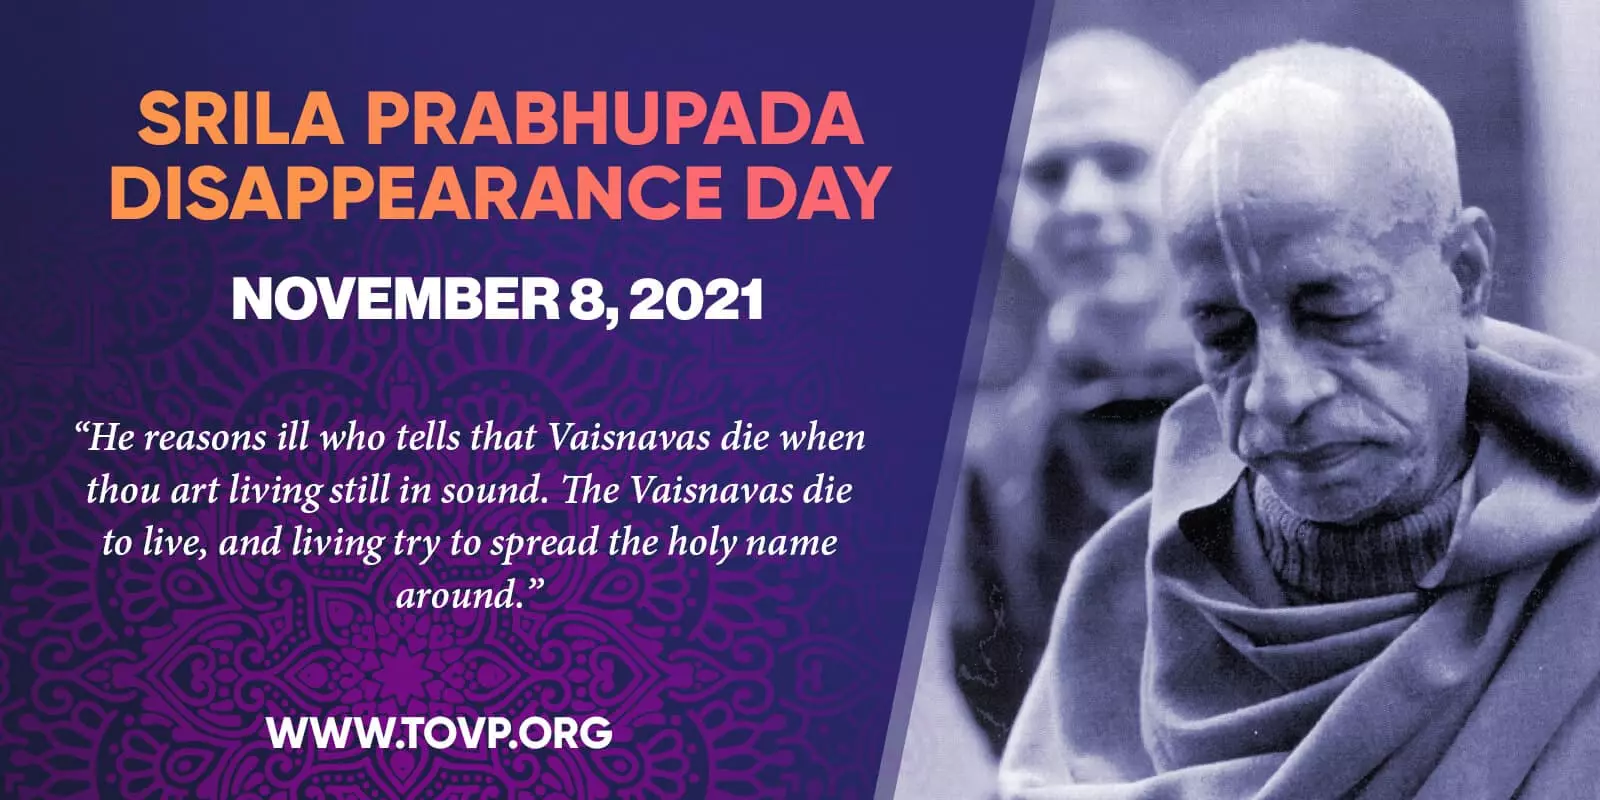 Jour de la disparition de Srila Prabhupada's et le TOVP